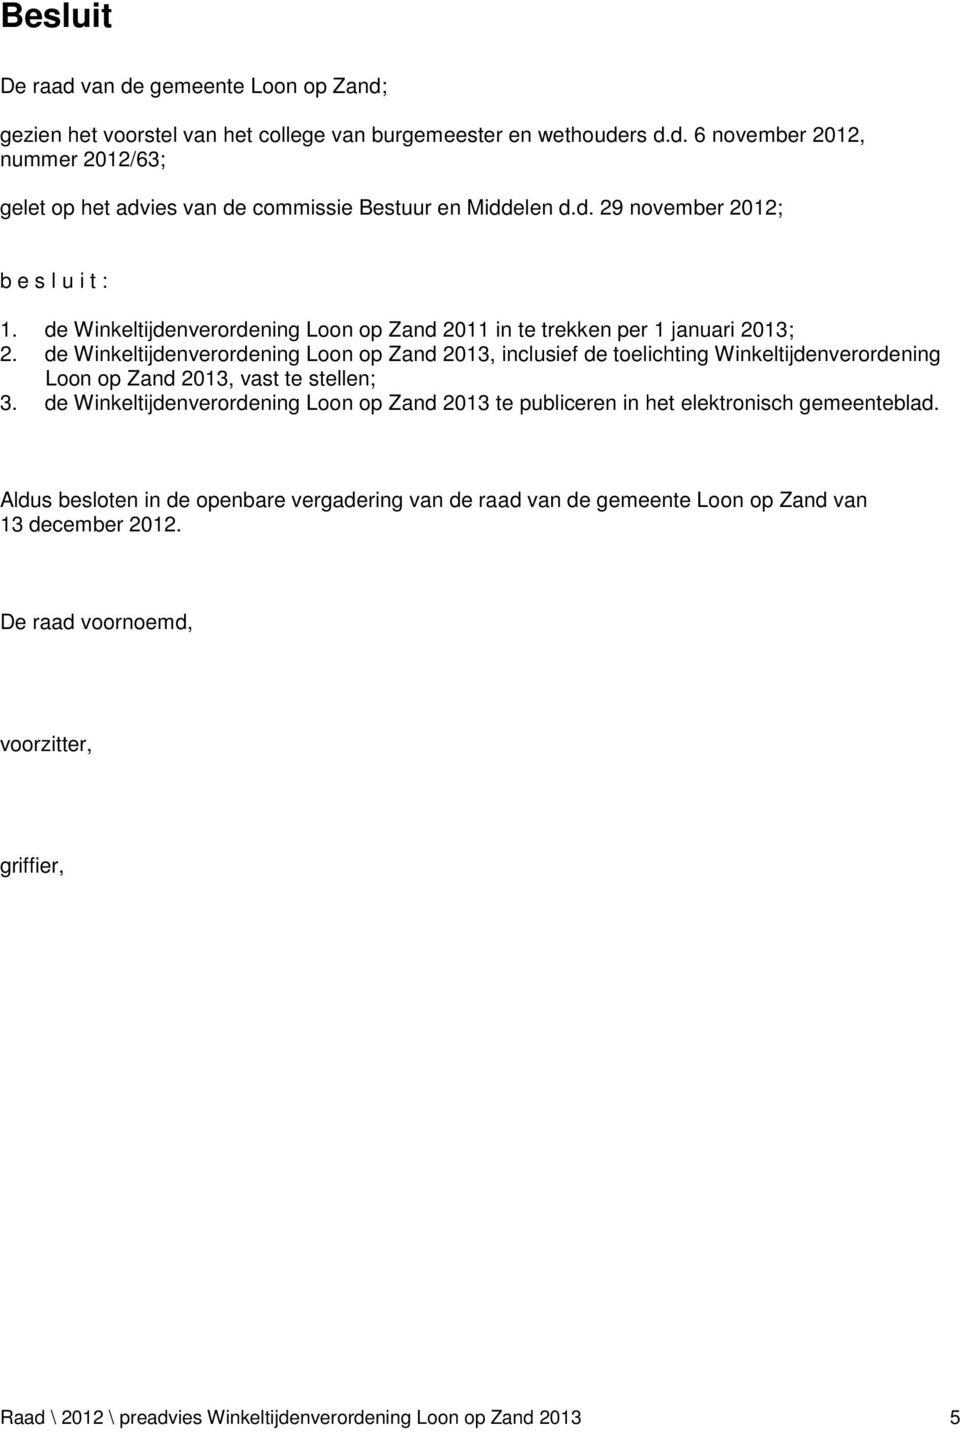 de Winkeltijdenverordening Loon op Zand 2013, inclusief de toelichting Winkeltijdenverordening Loon op Zand 2013, vast te stellen; 3.